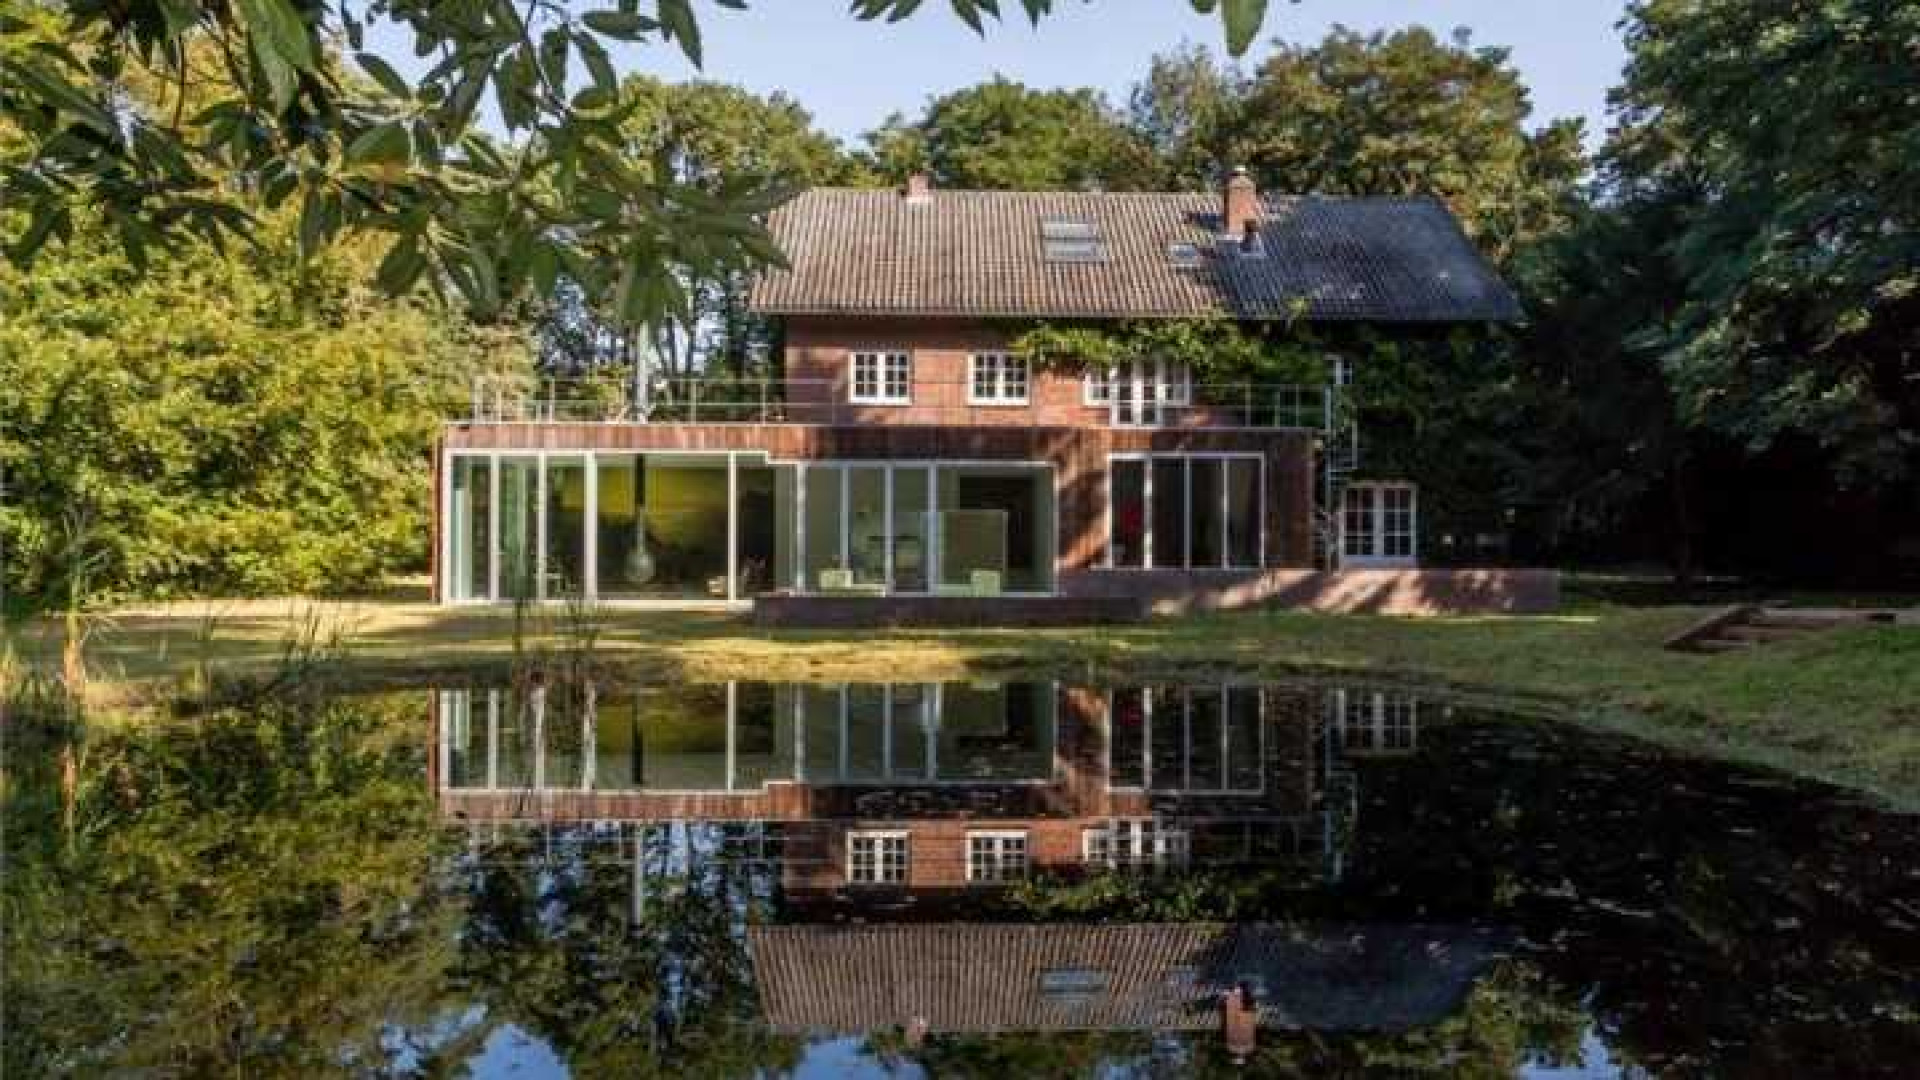 Ex vrouw Harrie Kolen legt beslag op villa en penthouse Amanda Krabbe en haar man. Zie foto's 36